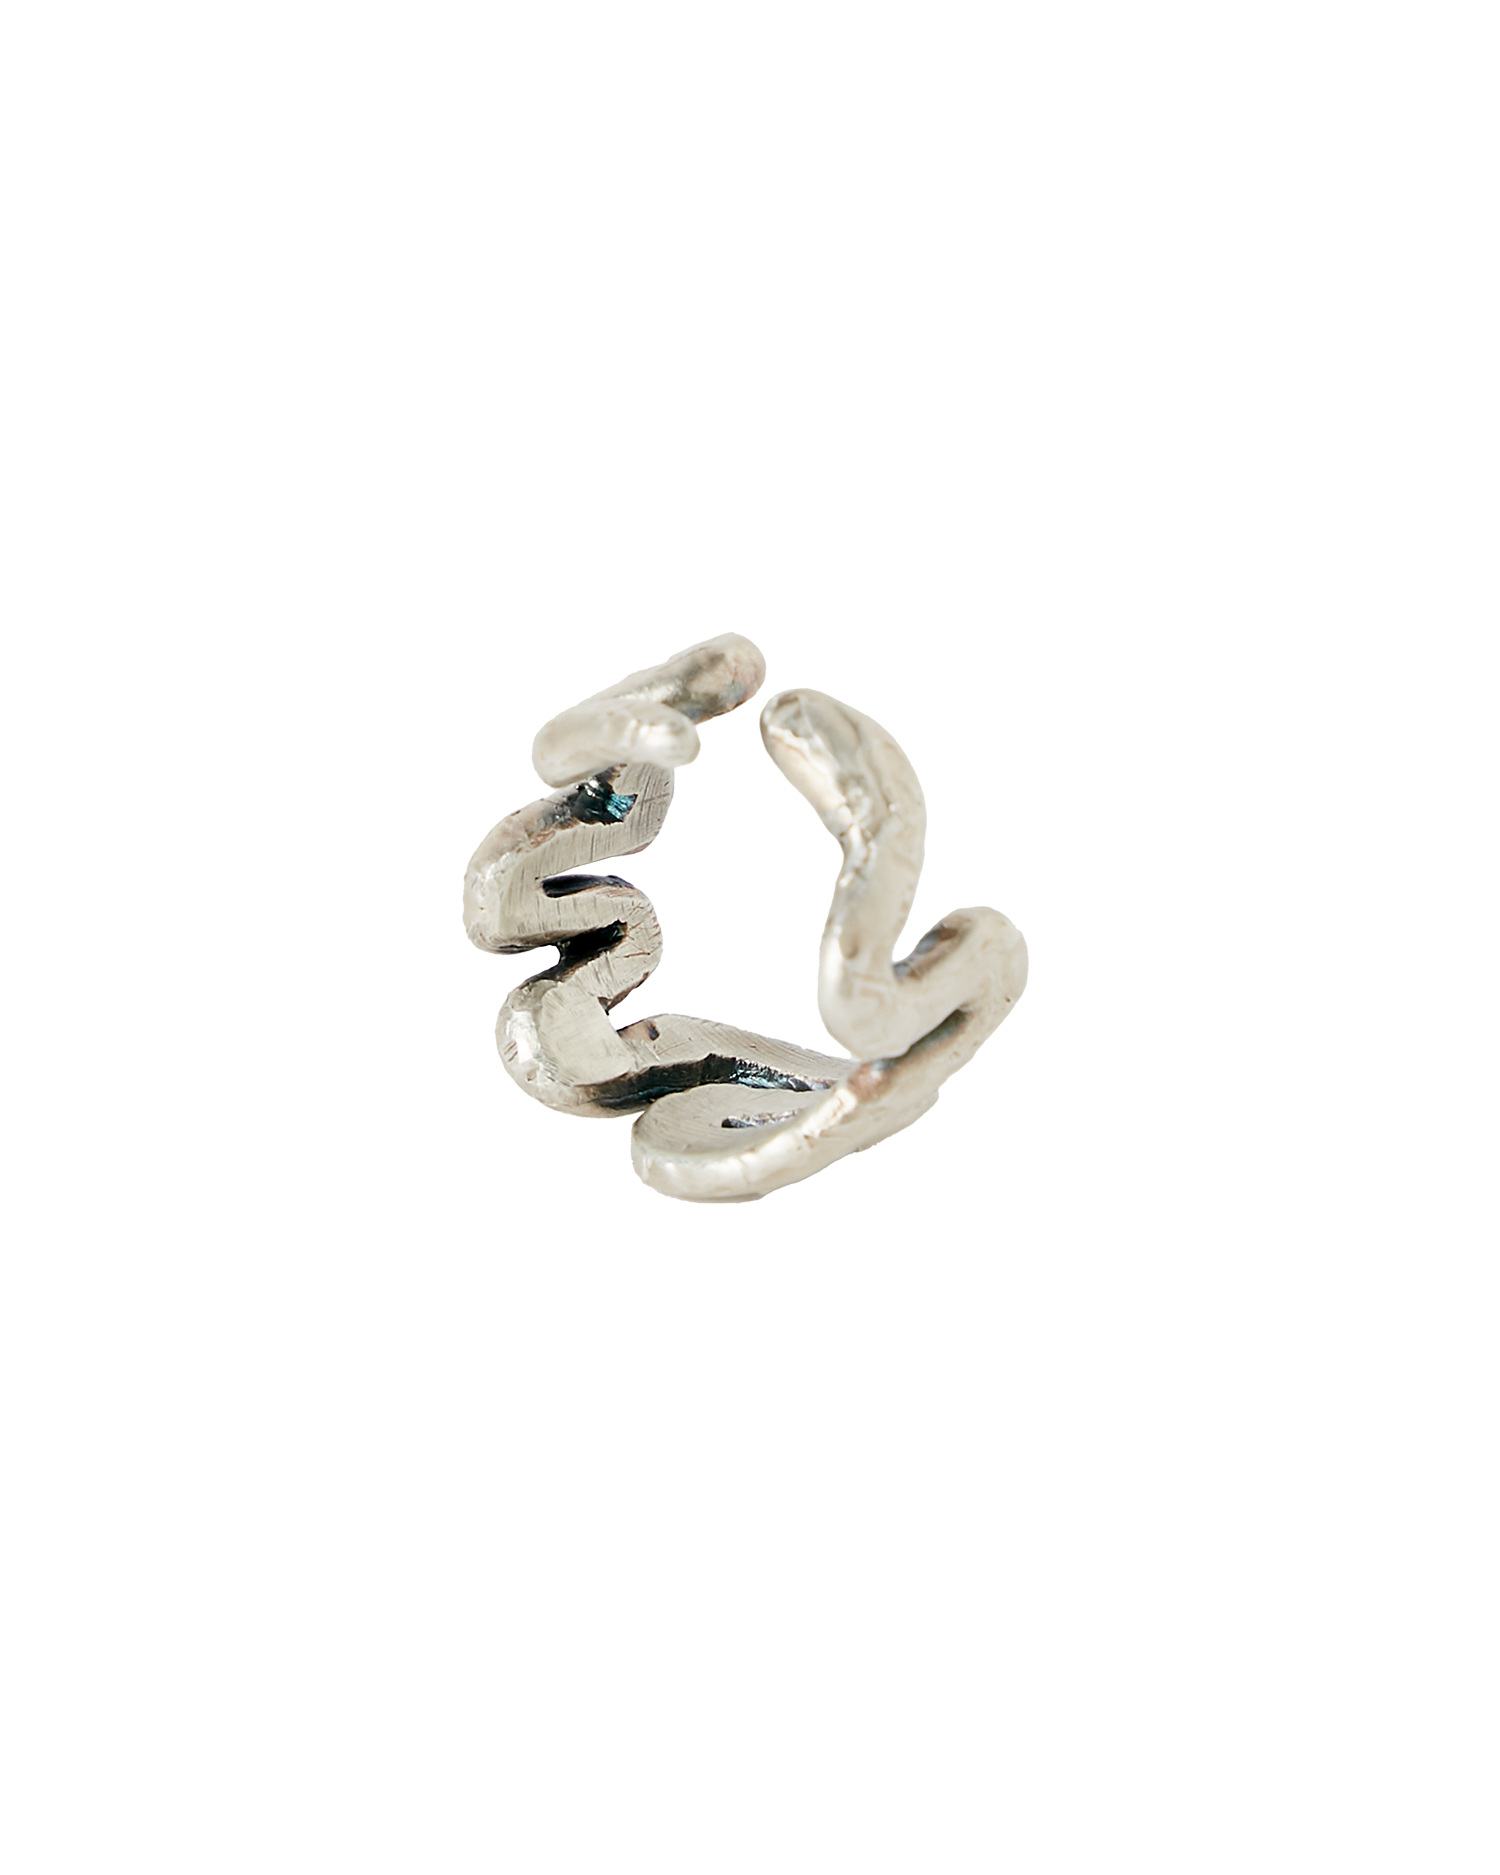 Wyrm Ring - Oxidised Silver